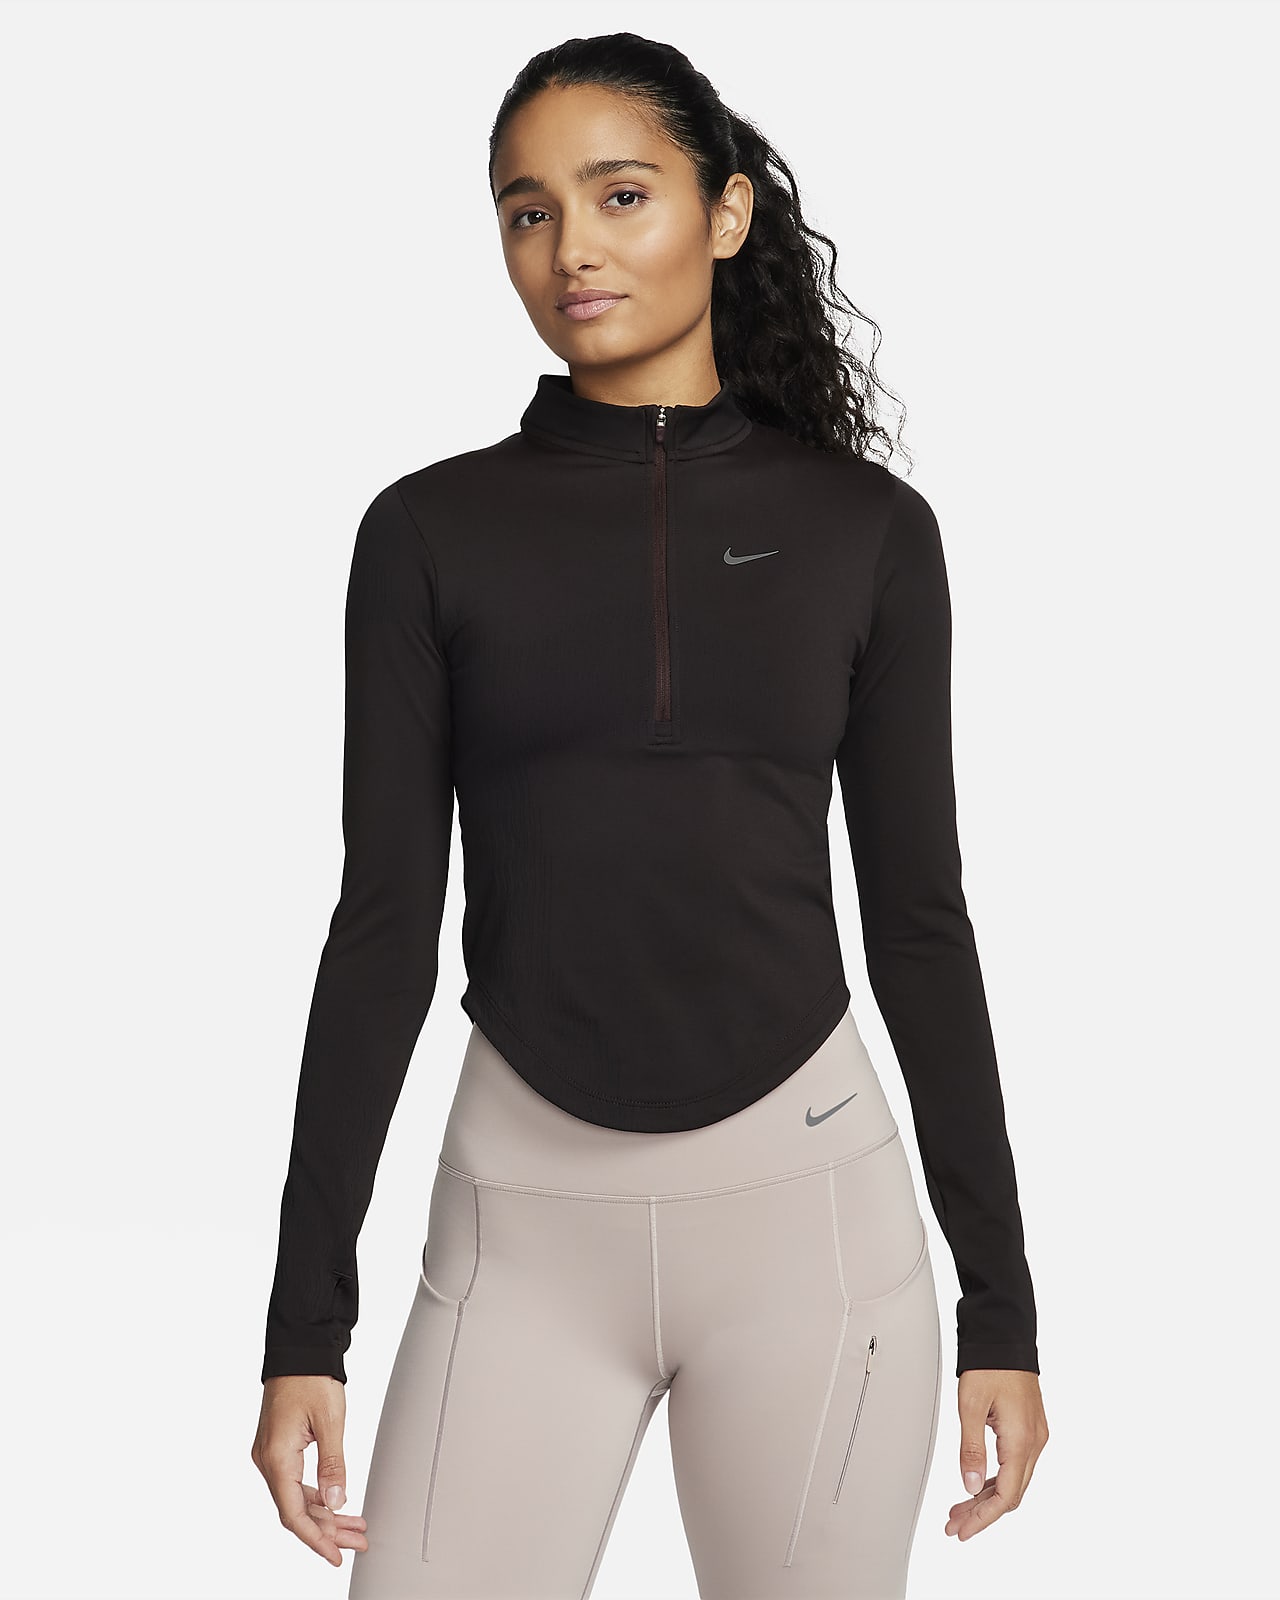 Capo midlayer con zip a metà lunghezza Dri-FIT ADV Nike Running Division – Donna